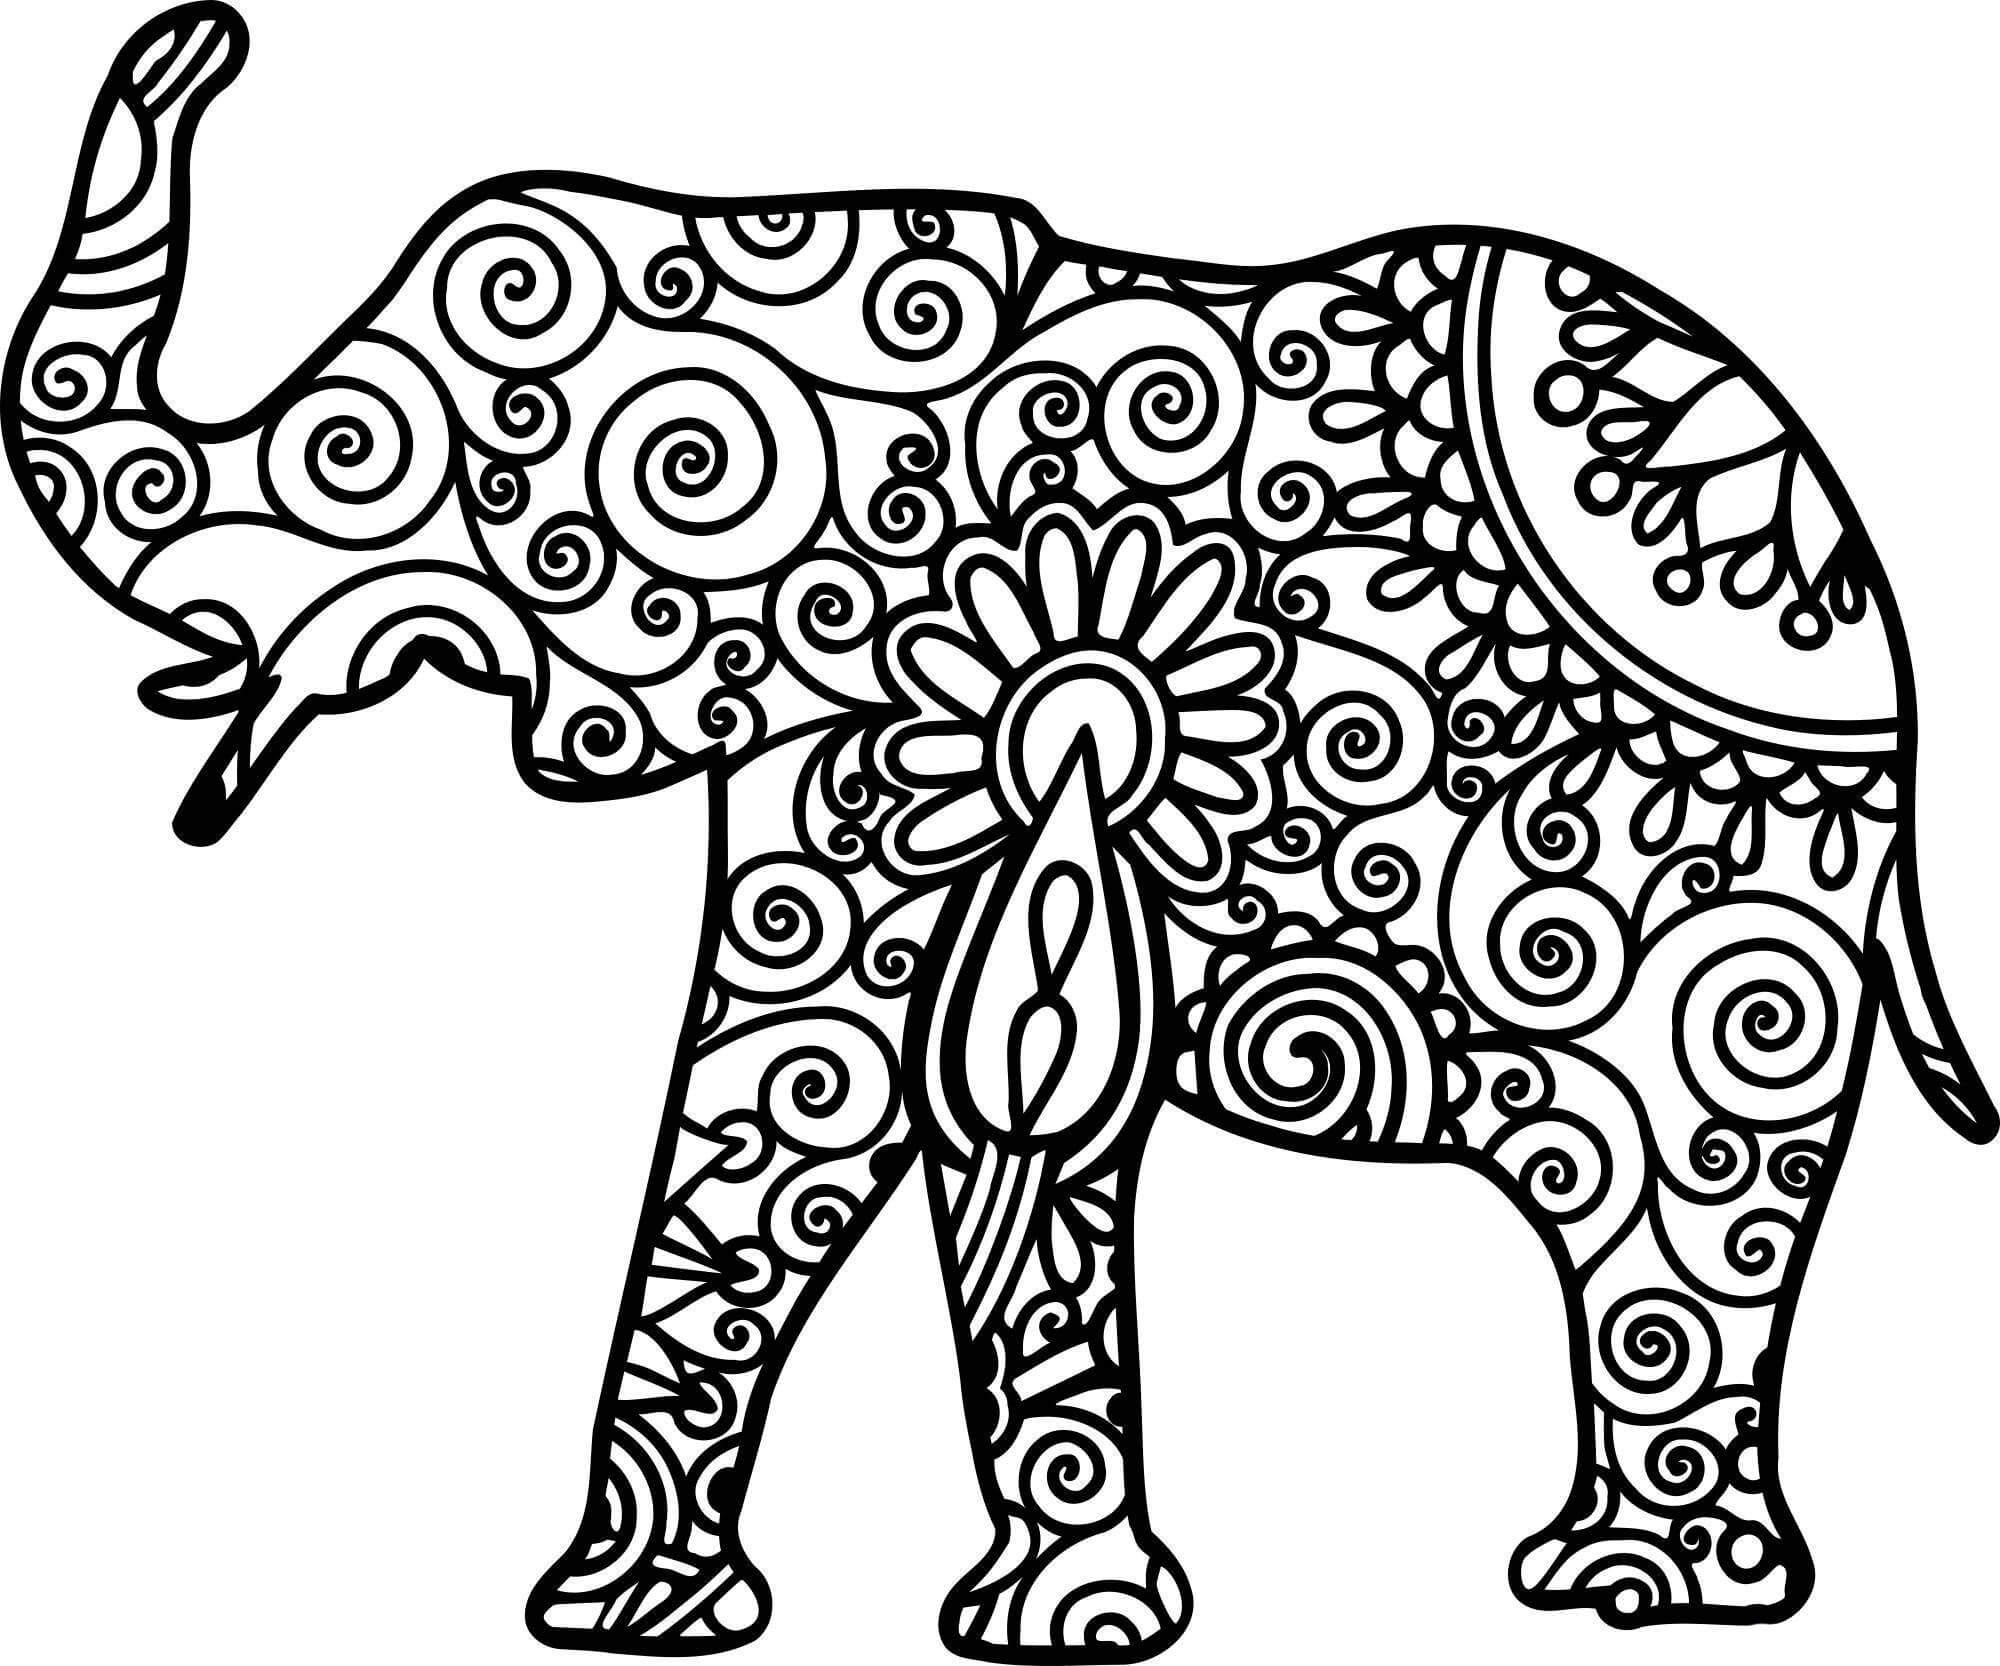 Mandala Elephant Coloring Page - Sheet 8 Mandalas